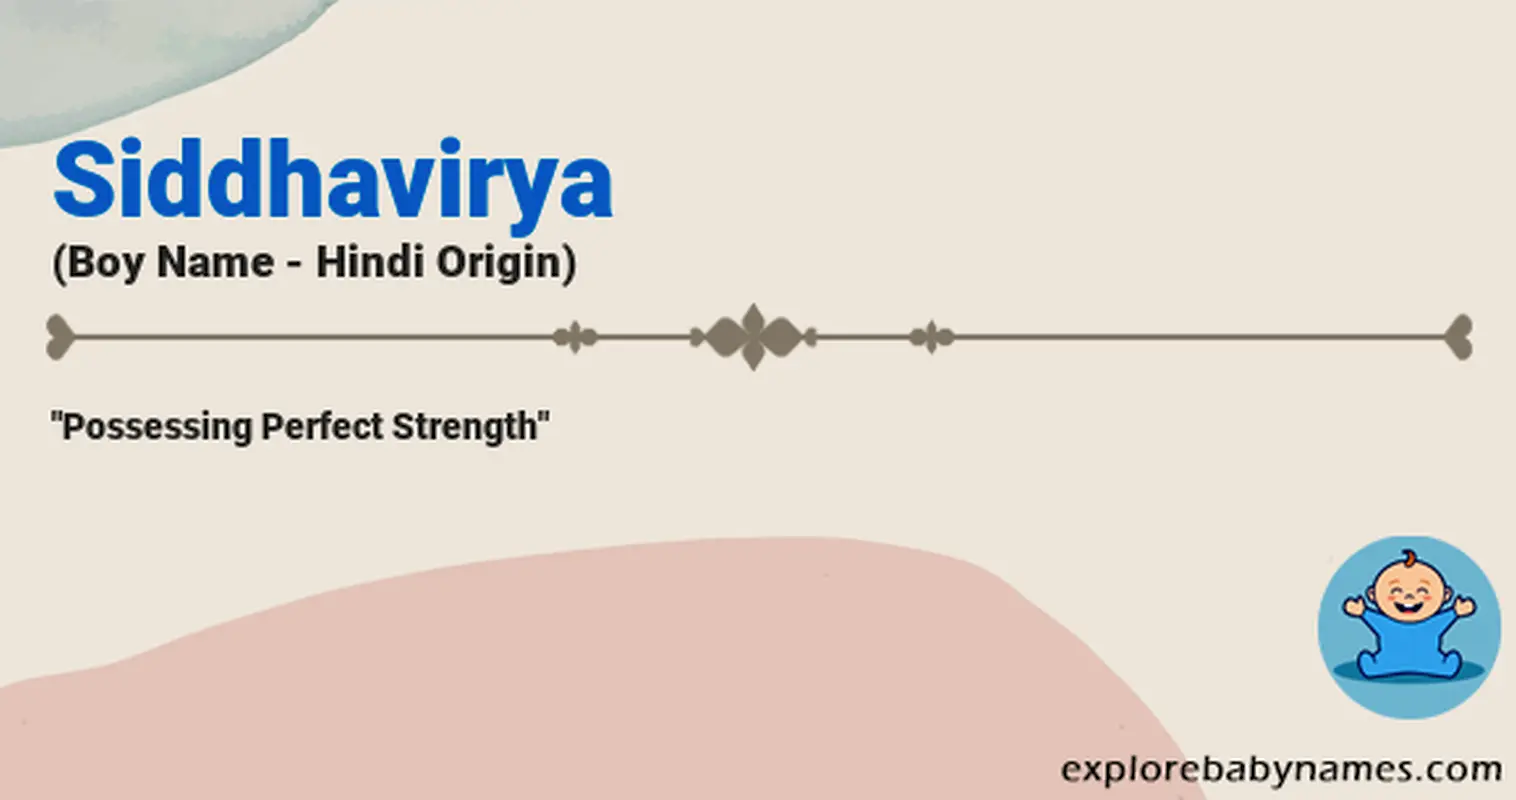 Meaning of Siddhavirya